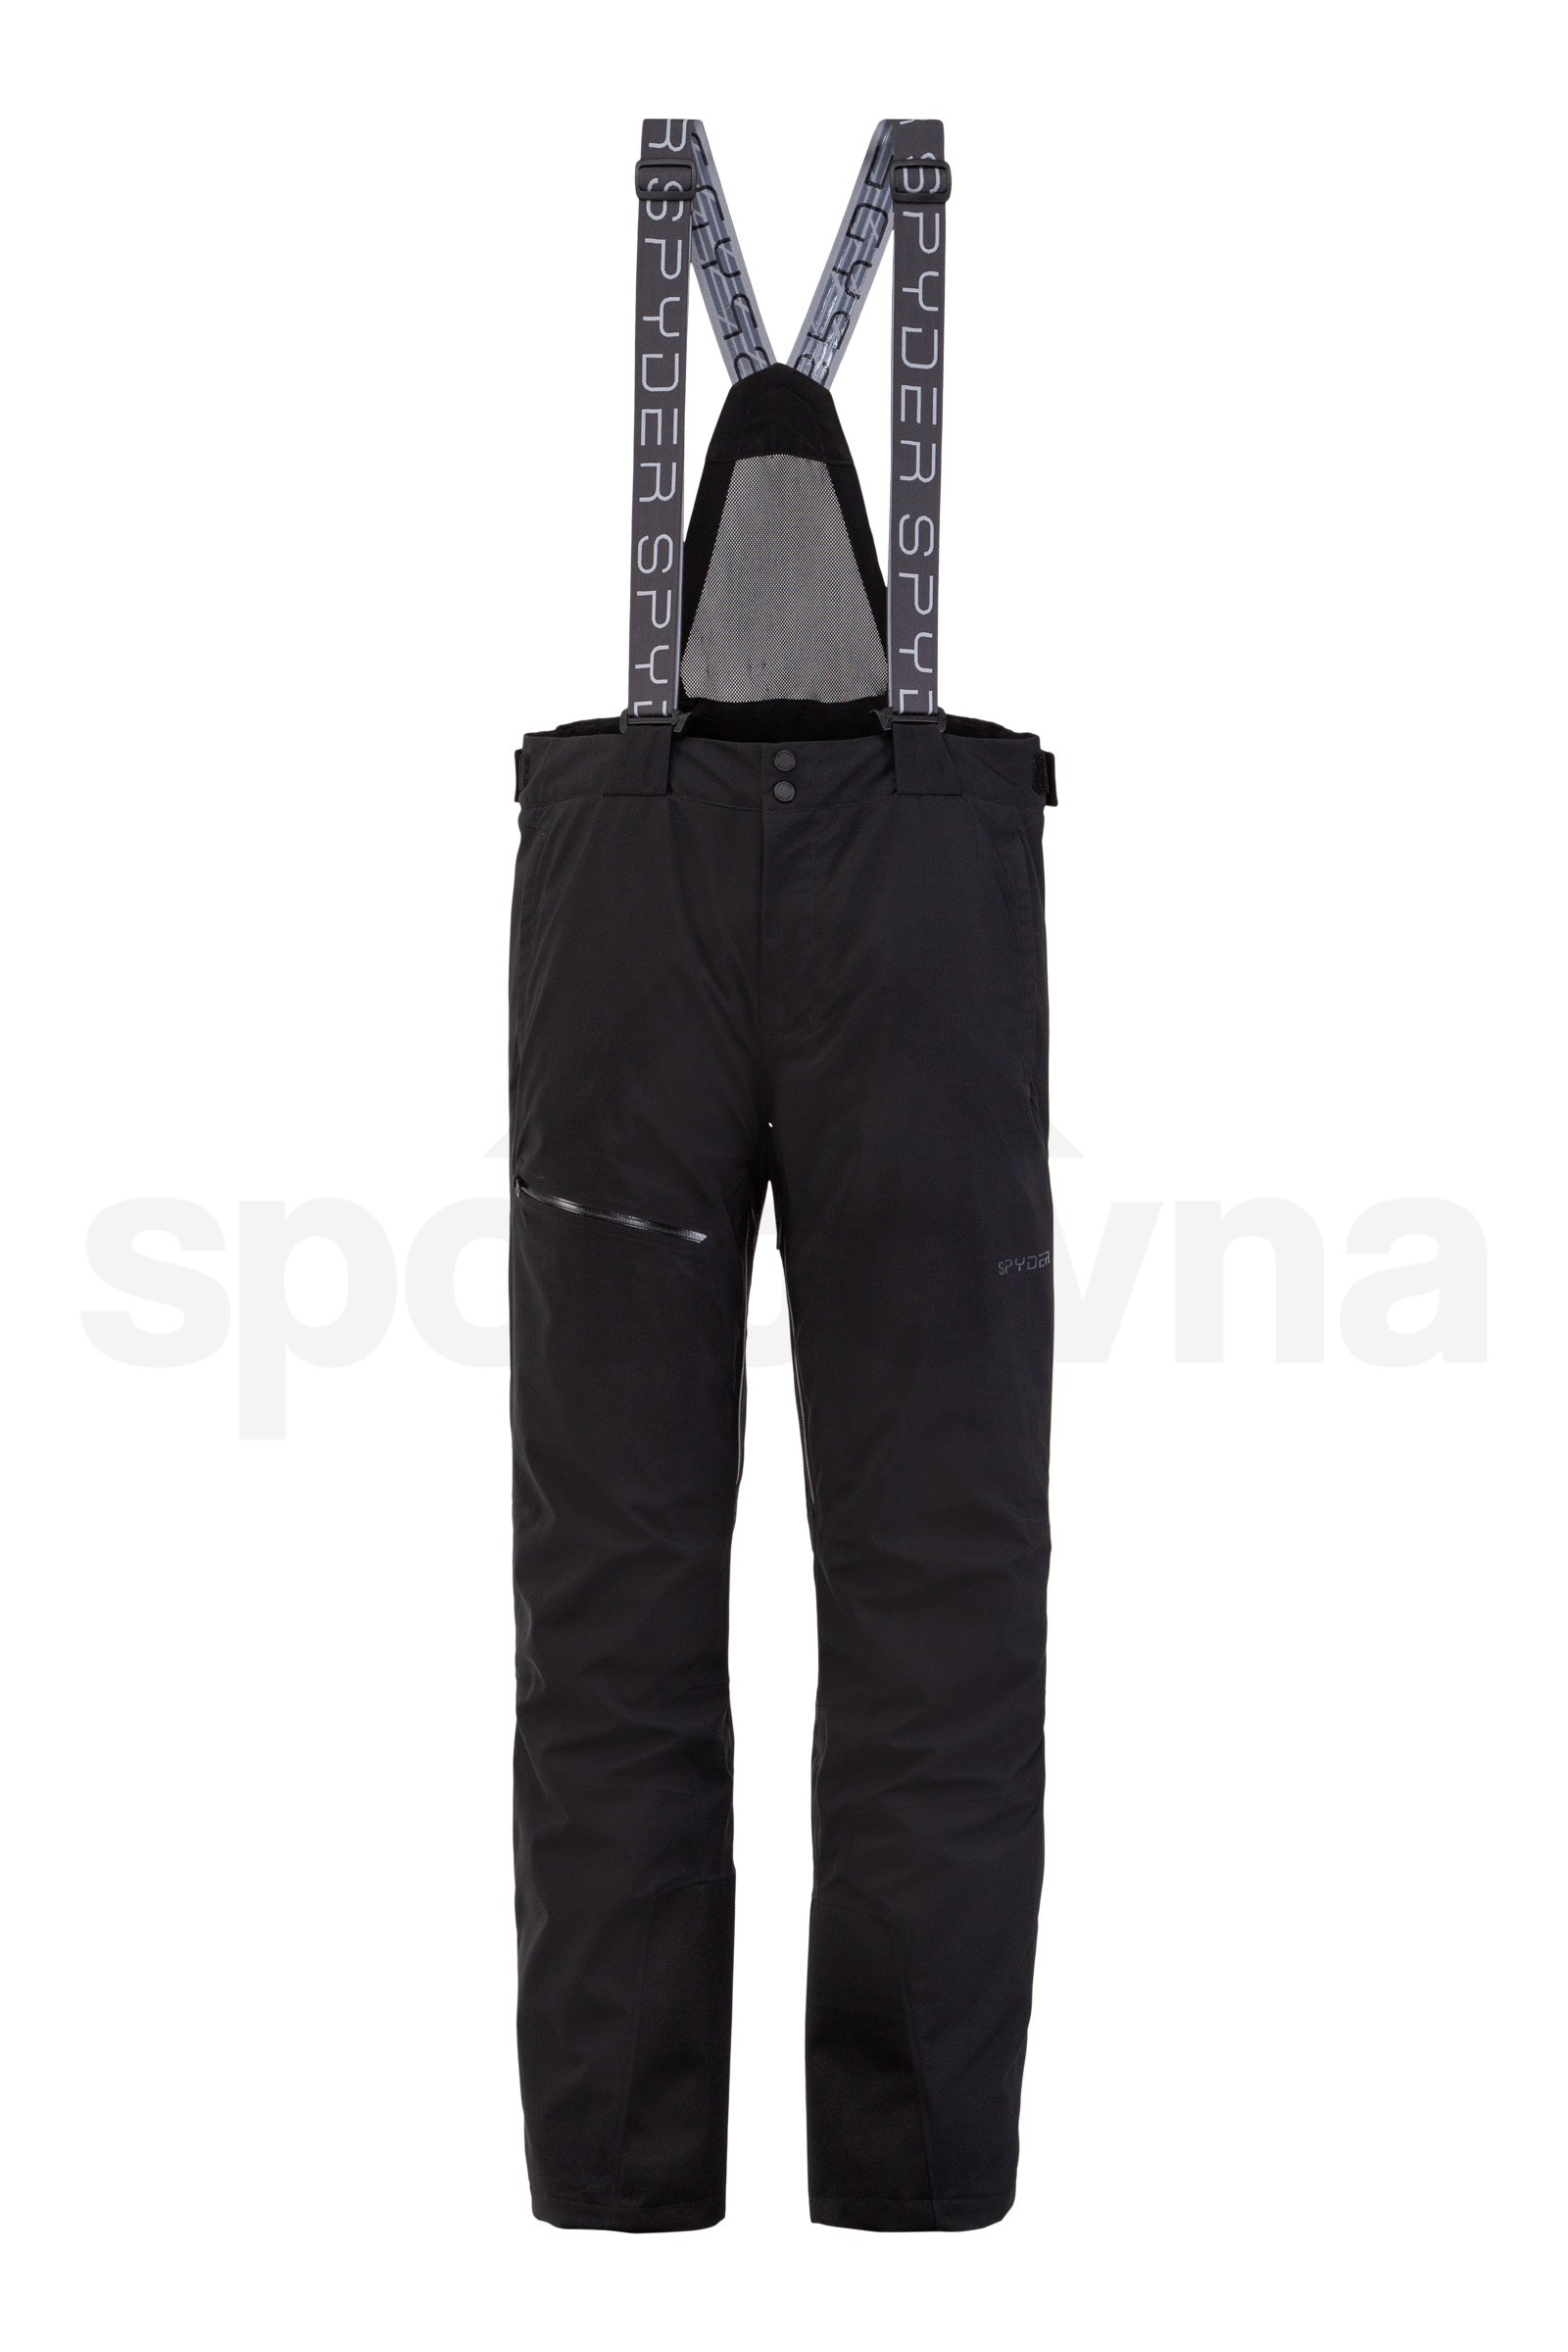 Kalhoty Spyder SP-M Dare GTX-Pant - černá